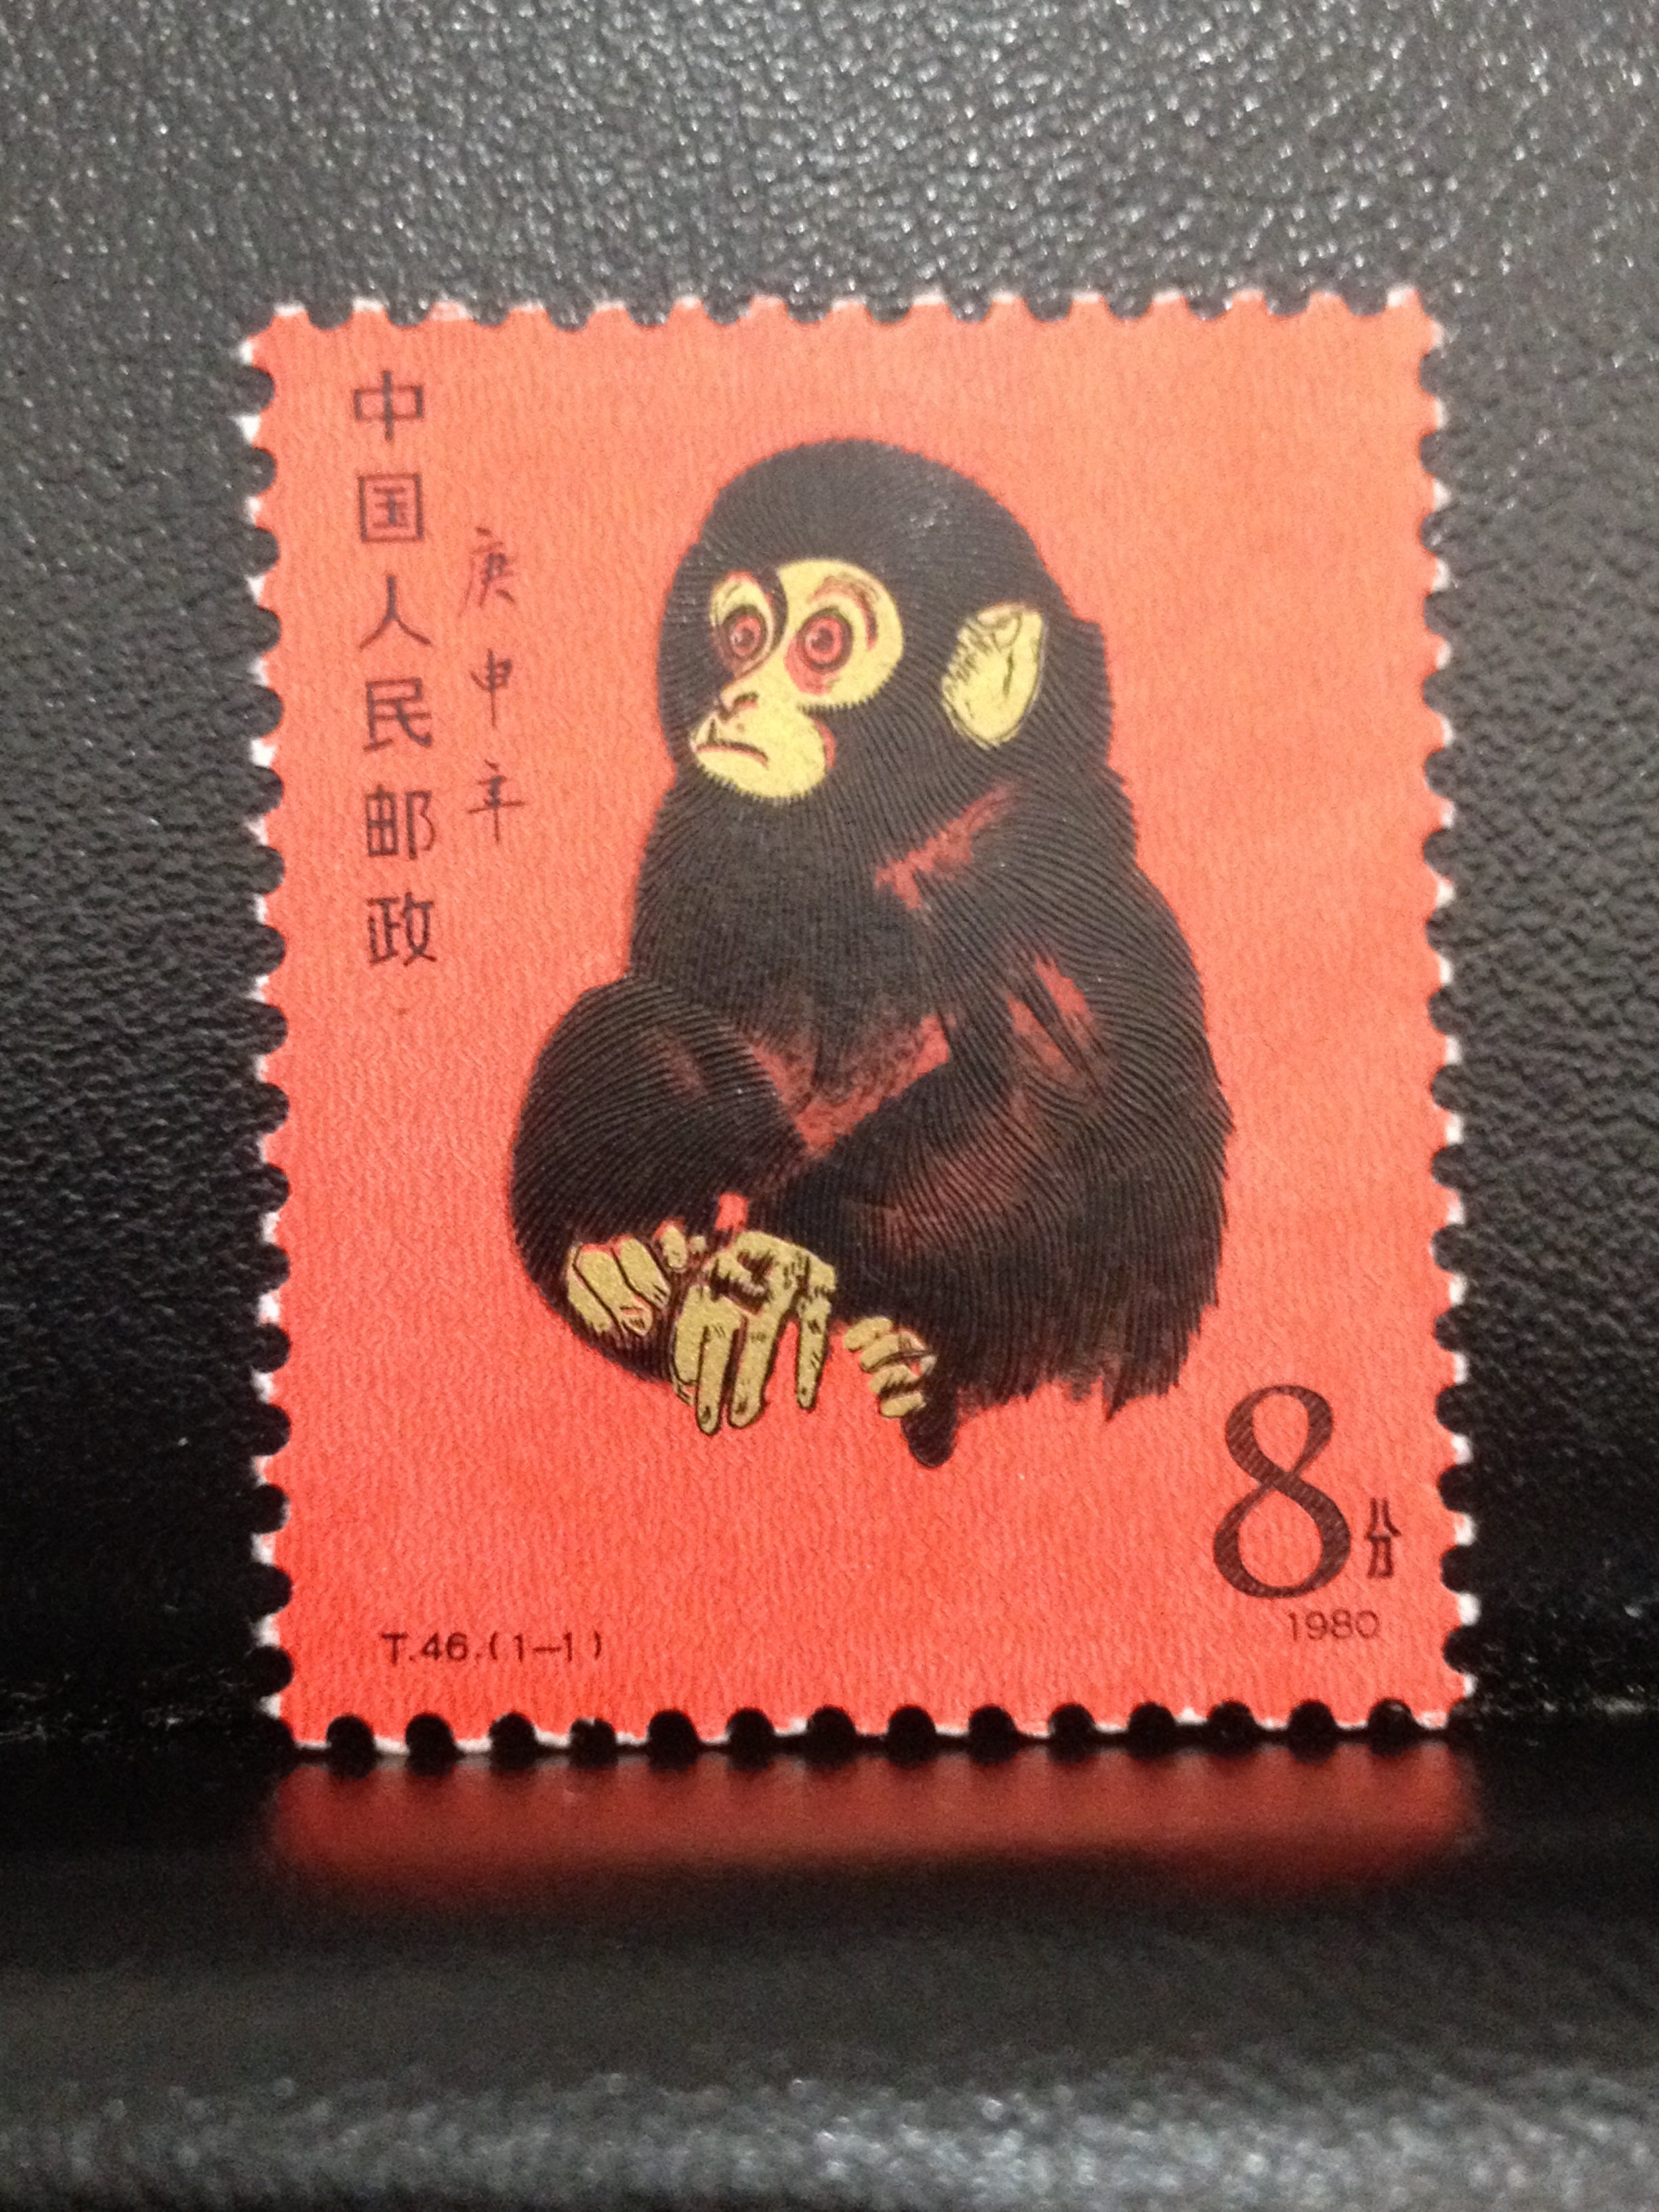 中国切手 赤猿 高画質 縦長サイズ お猿の写真集 高解像度0万画素以上 Dl ダウンロード可能 Naver まとめ